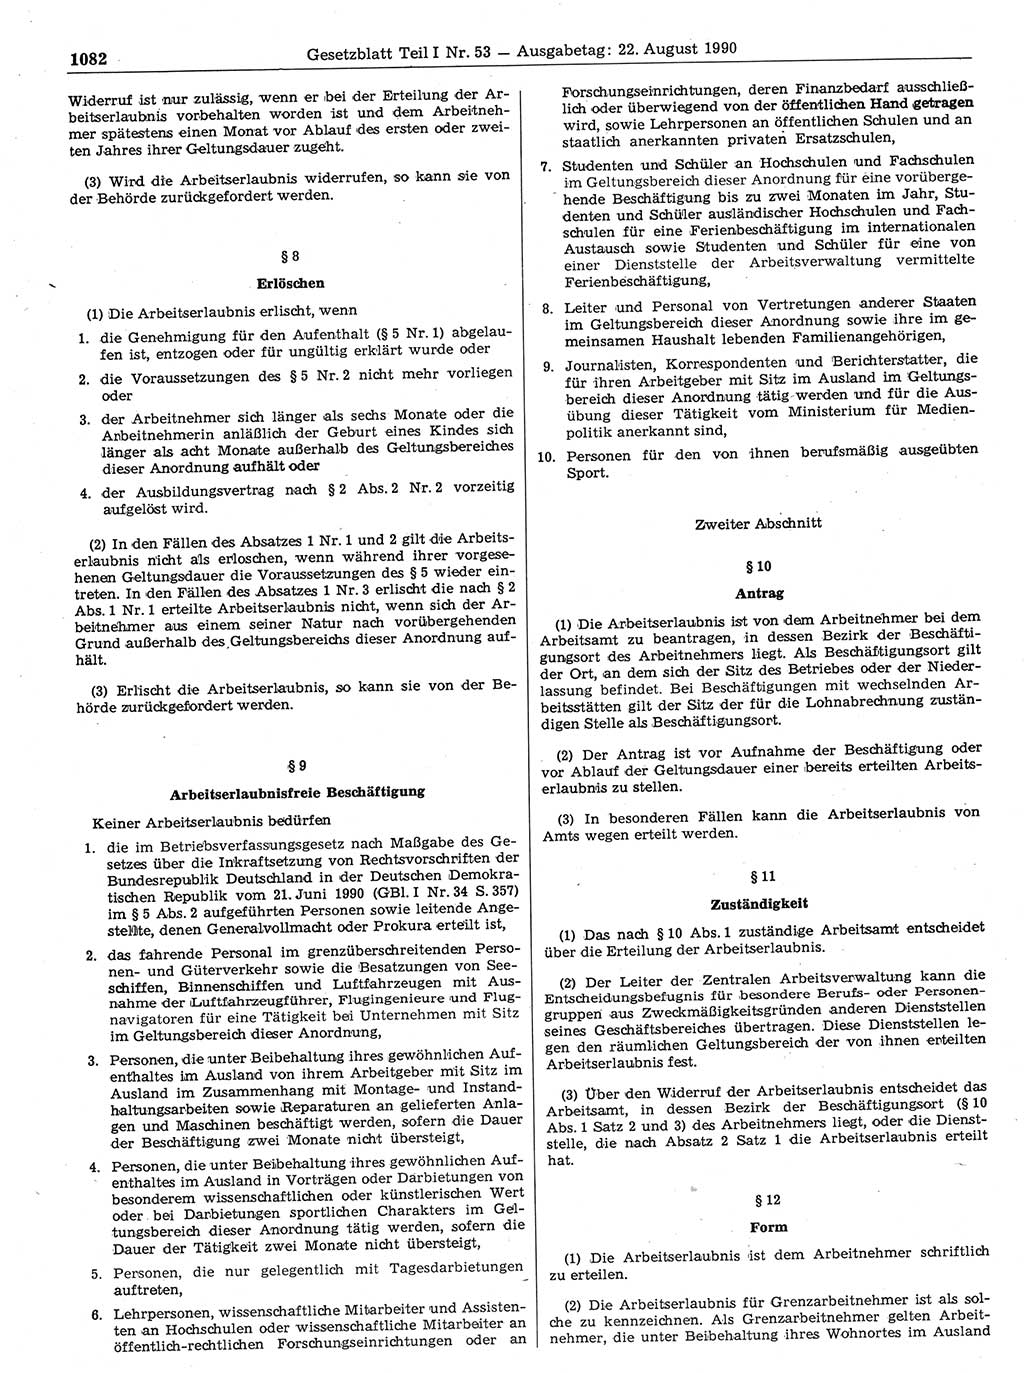 Gesetzblatt (GBl.) der Deutschen Demokratischen Republik (DDR) Teil Ⅰ 1990, Seite 1082 (GBl. DDR Ⅰ 1990, S. 1082)